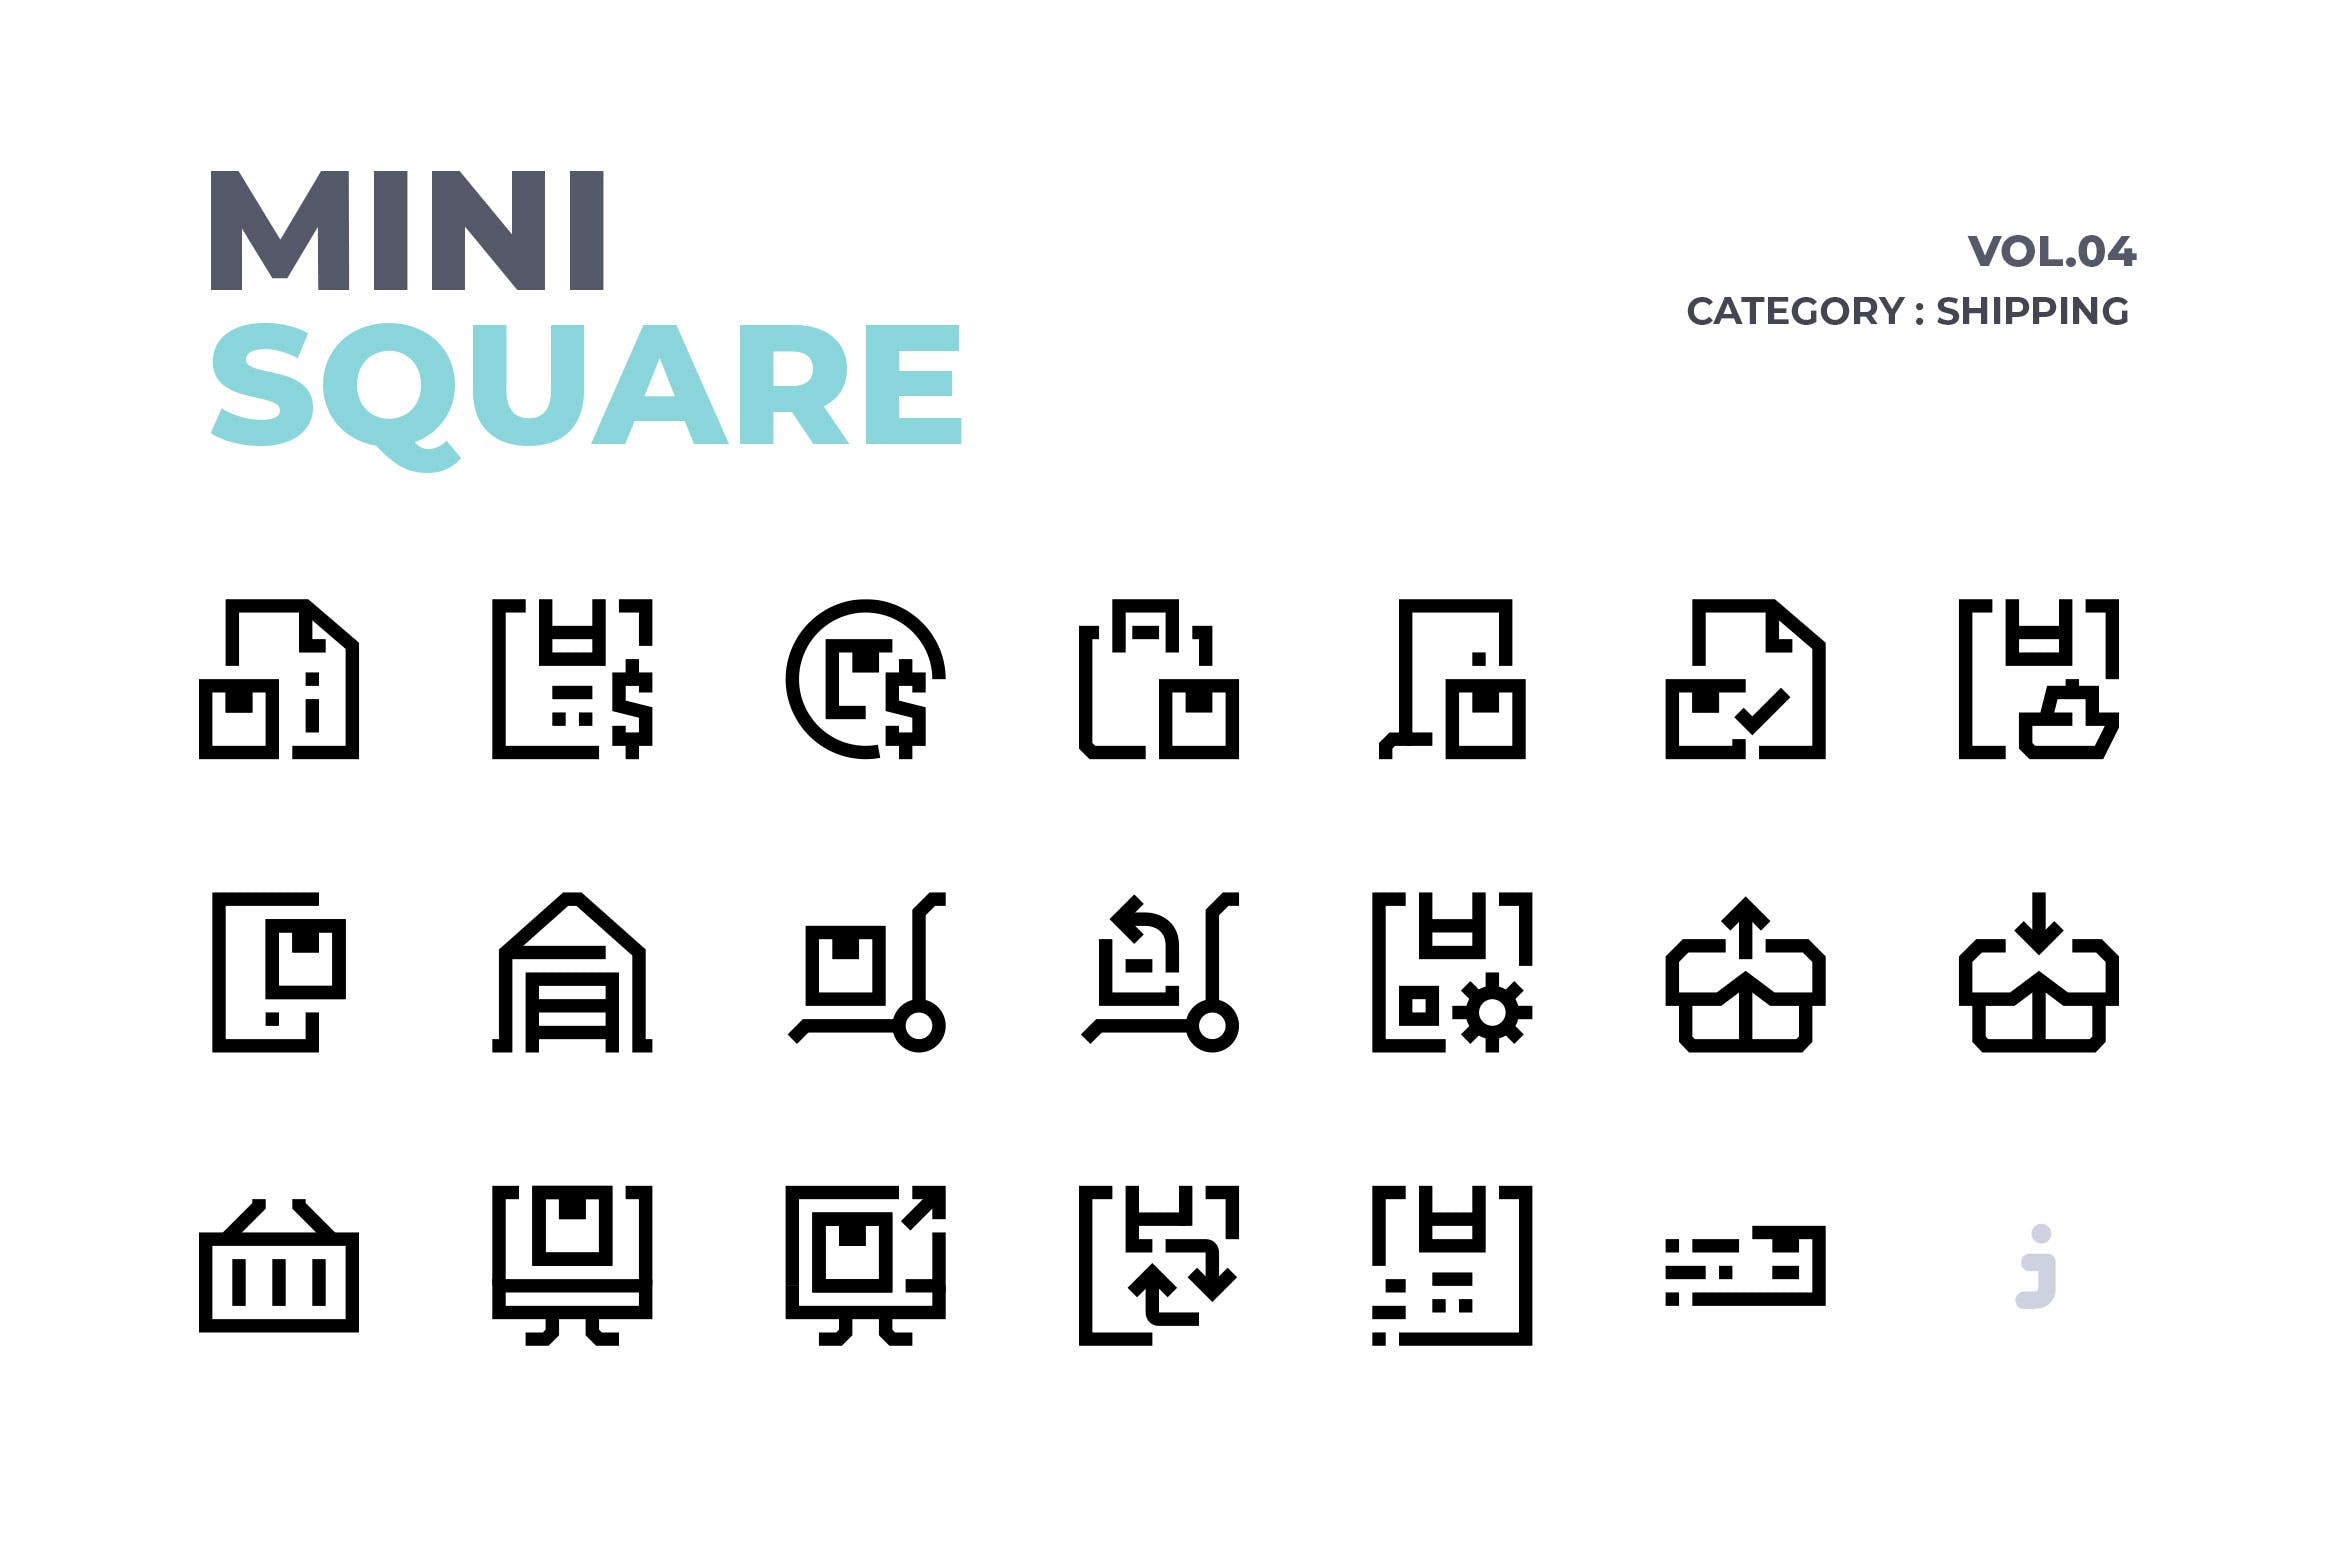 60枚快递包裹运输矢量图标 Mini square – 60 Shipping Icons设计素材模板